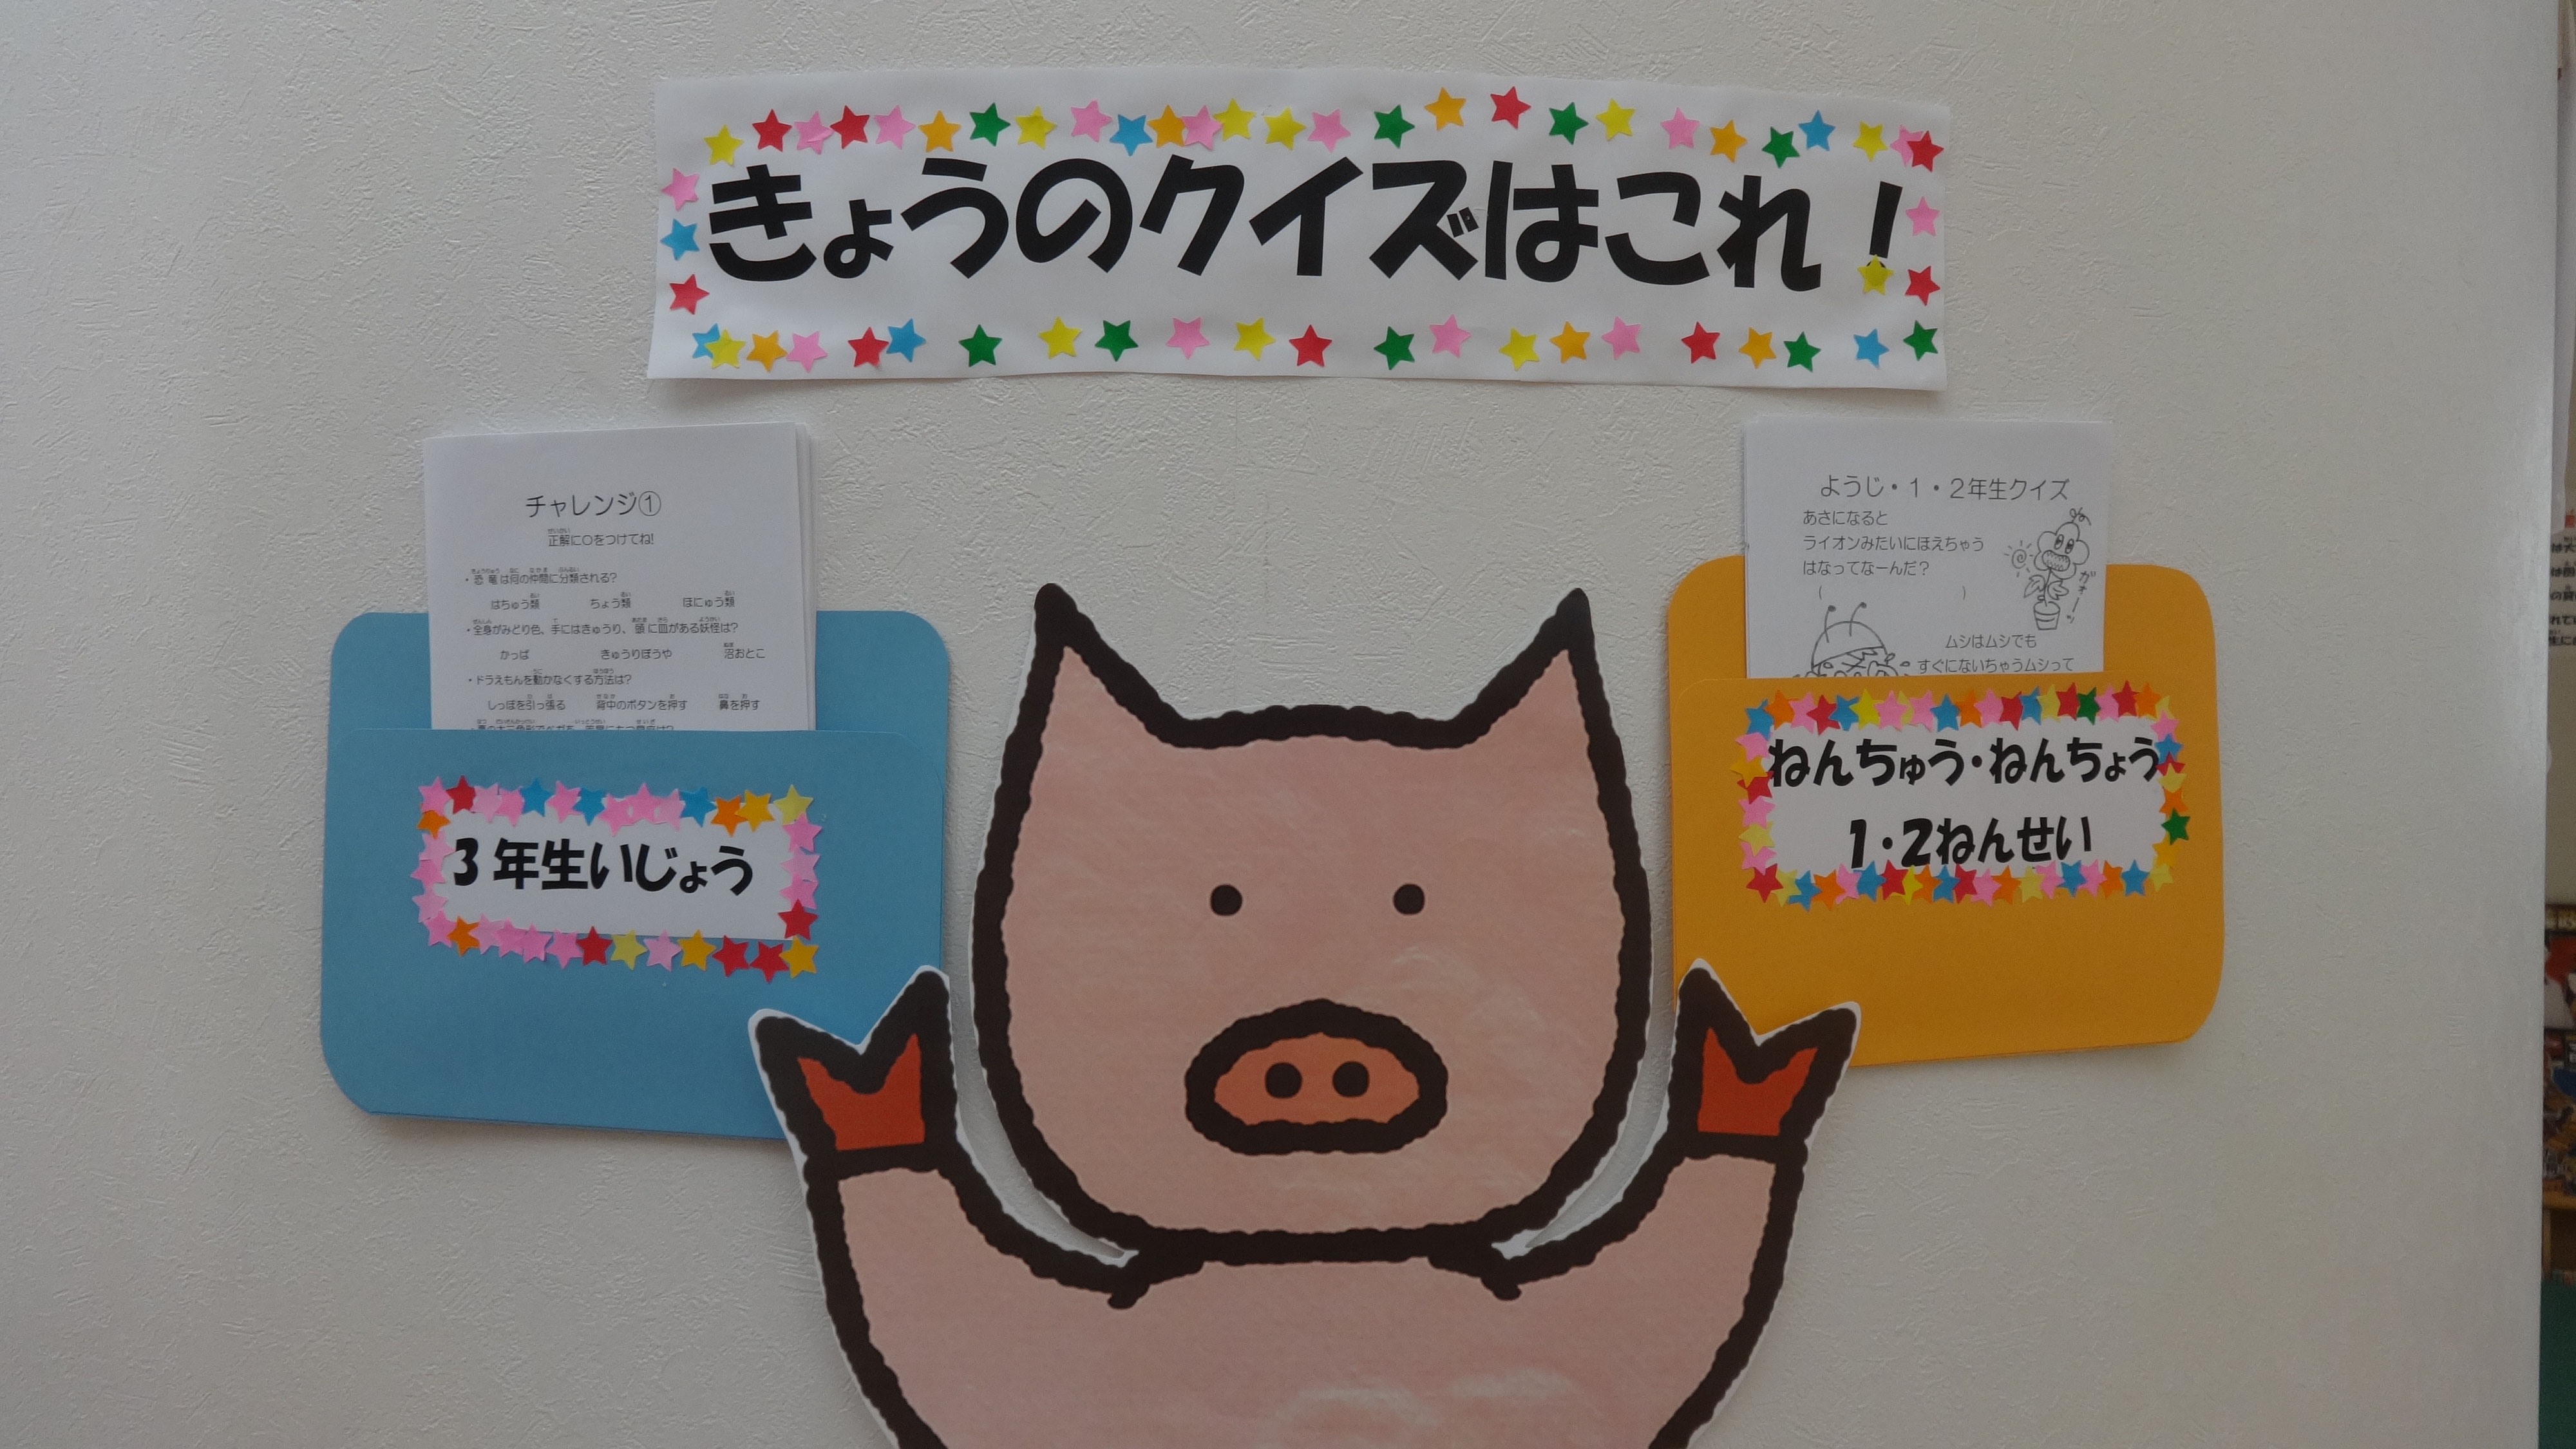 7月のおたのしみ情報 8月のおたのしみ情報 亀田東児童館 ホーム